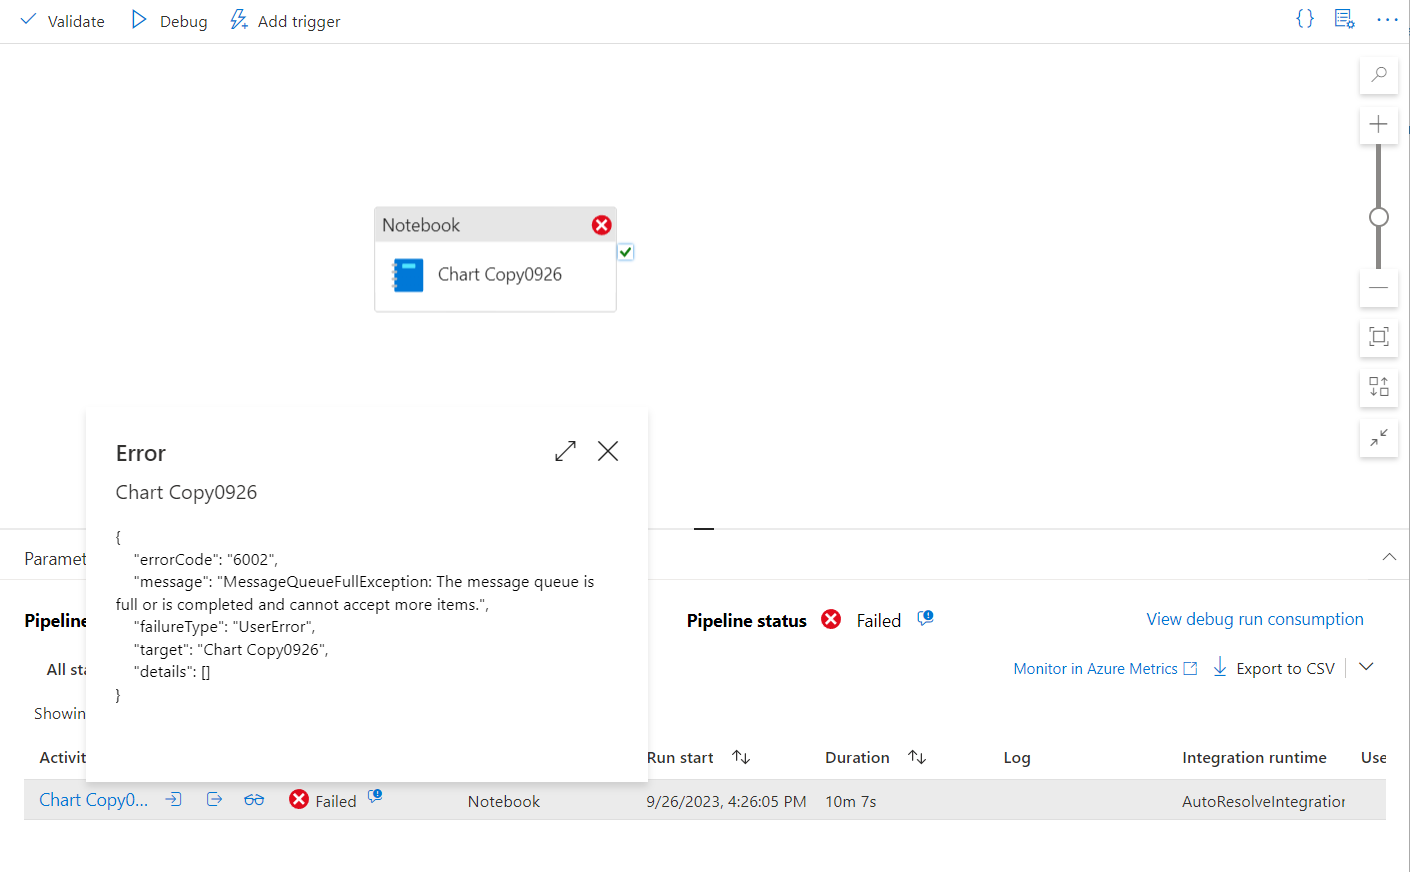 لقطة شاشة من مدخل Microsoft Azure تعرض رمز الخطأ 6002 في نموذج خطوة دفتر الملاحظات.